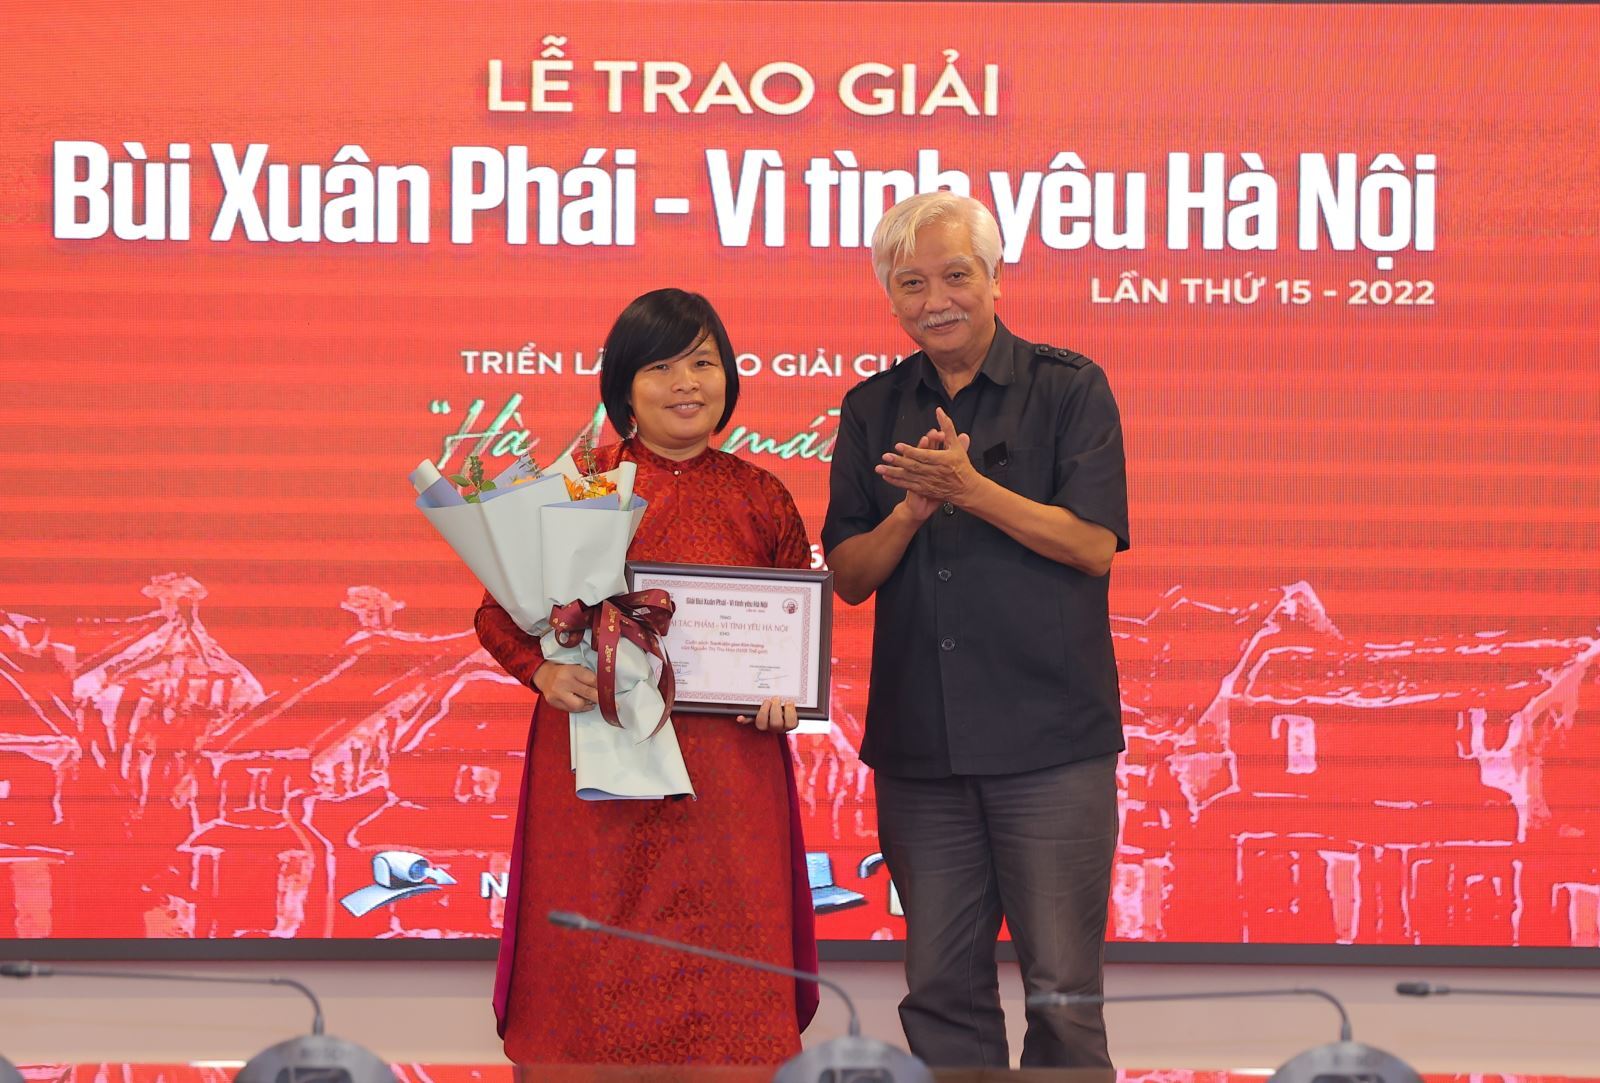 Đạo diễn phim “Hà Nội trong mắt ai” thắng Giải Bùi Xuân Phái - 2022 - 3